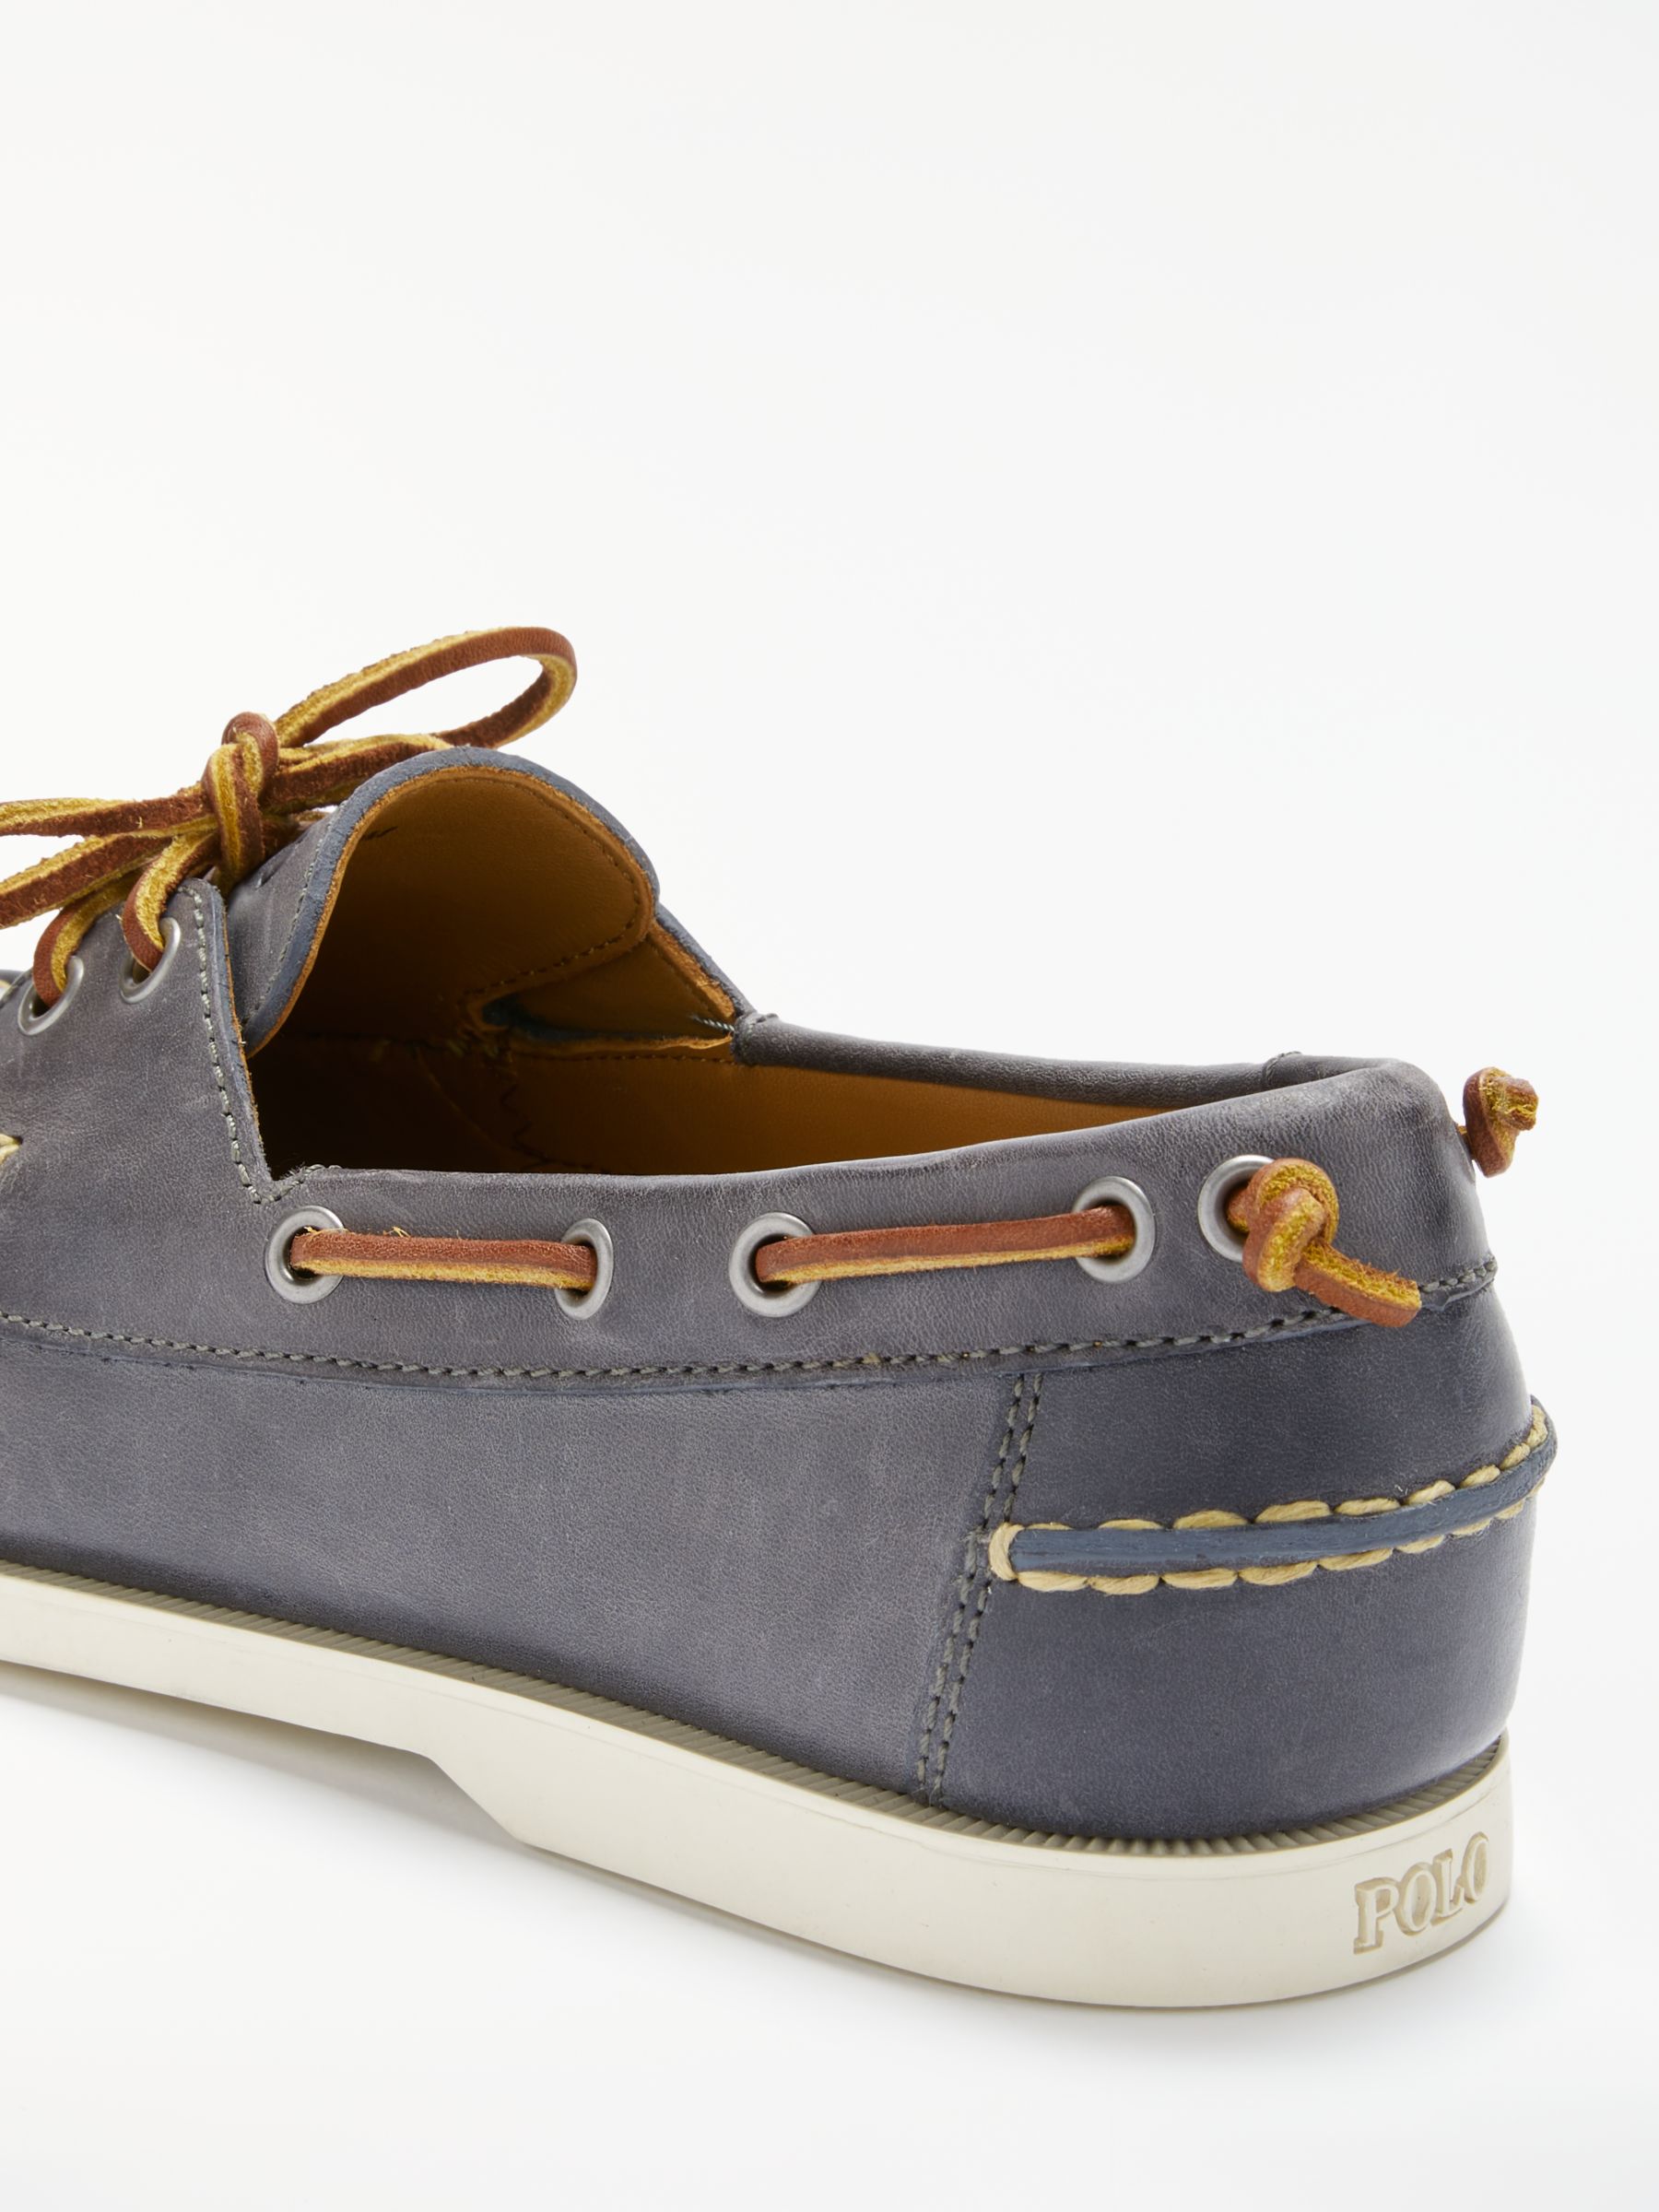 polo merton boat shoes